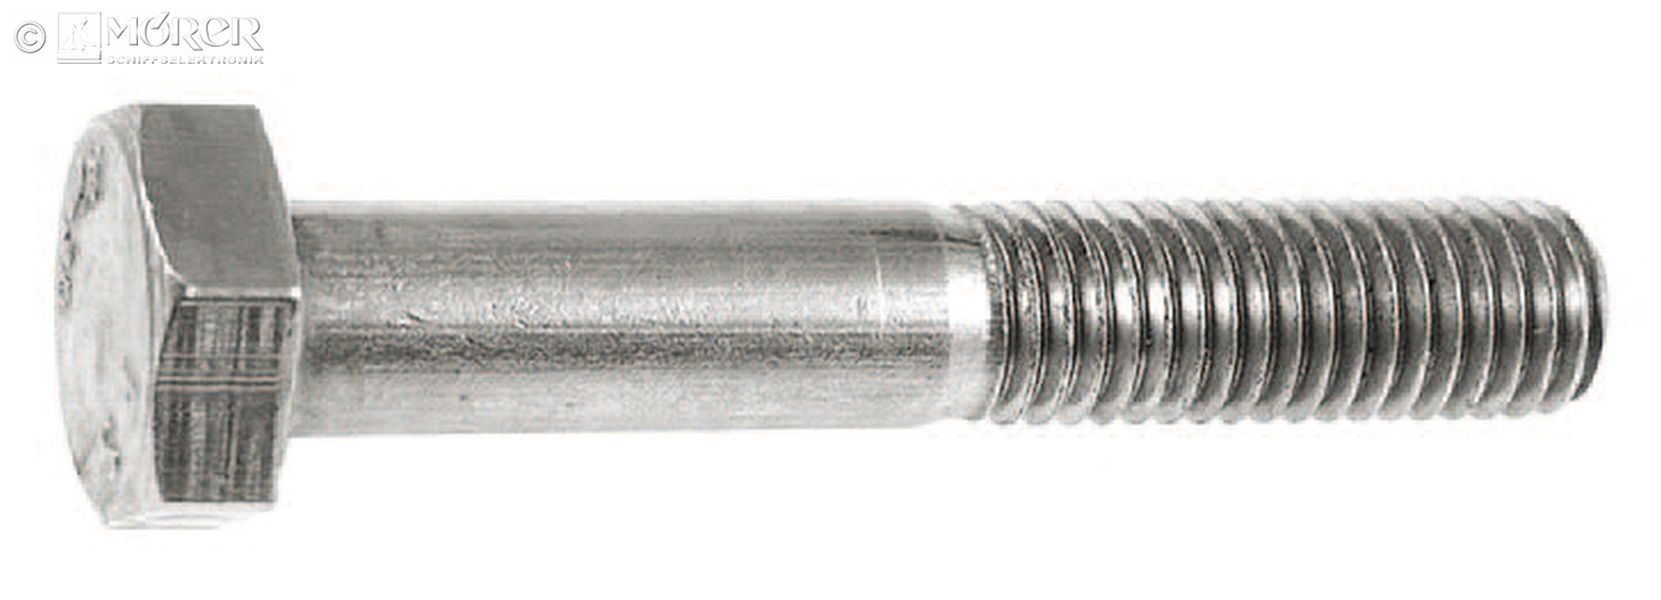 Hexagonal bolts - M8 x 50 mm - 2 pcs. - V4A - shaft